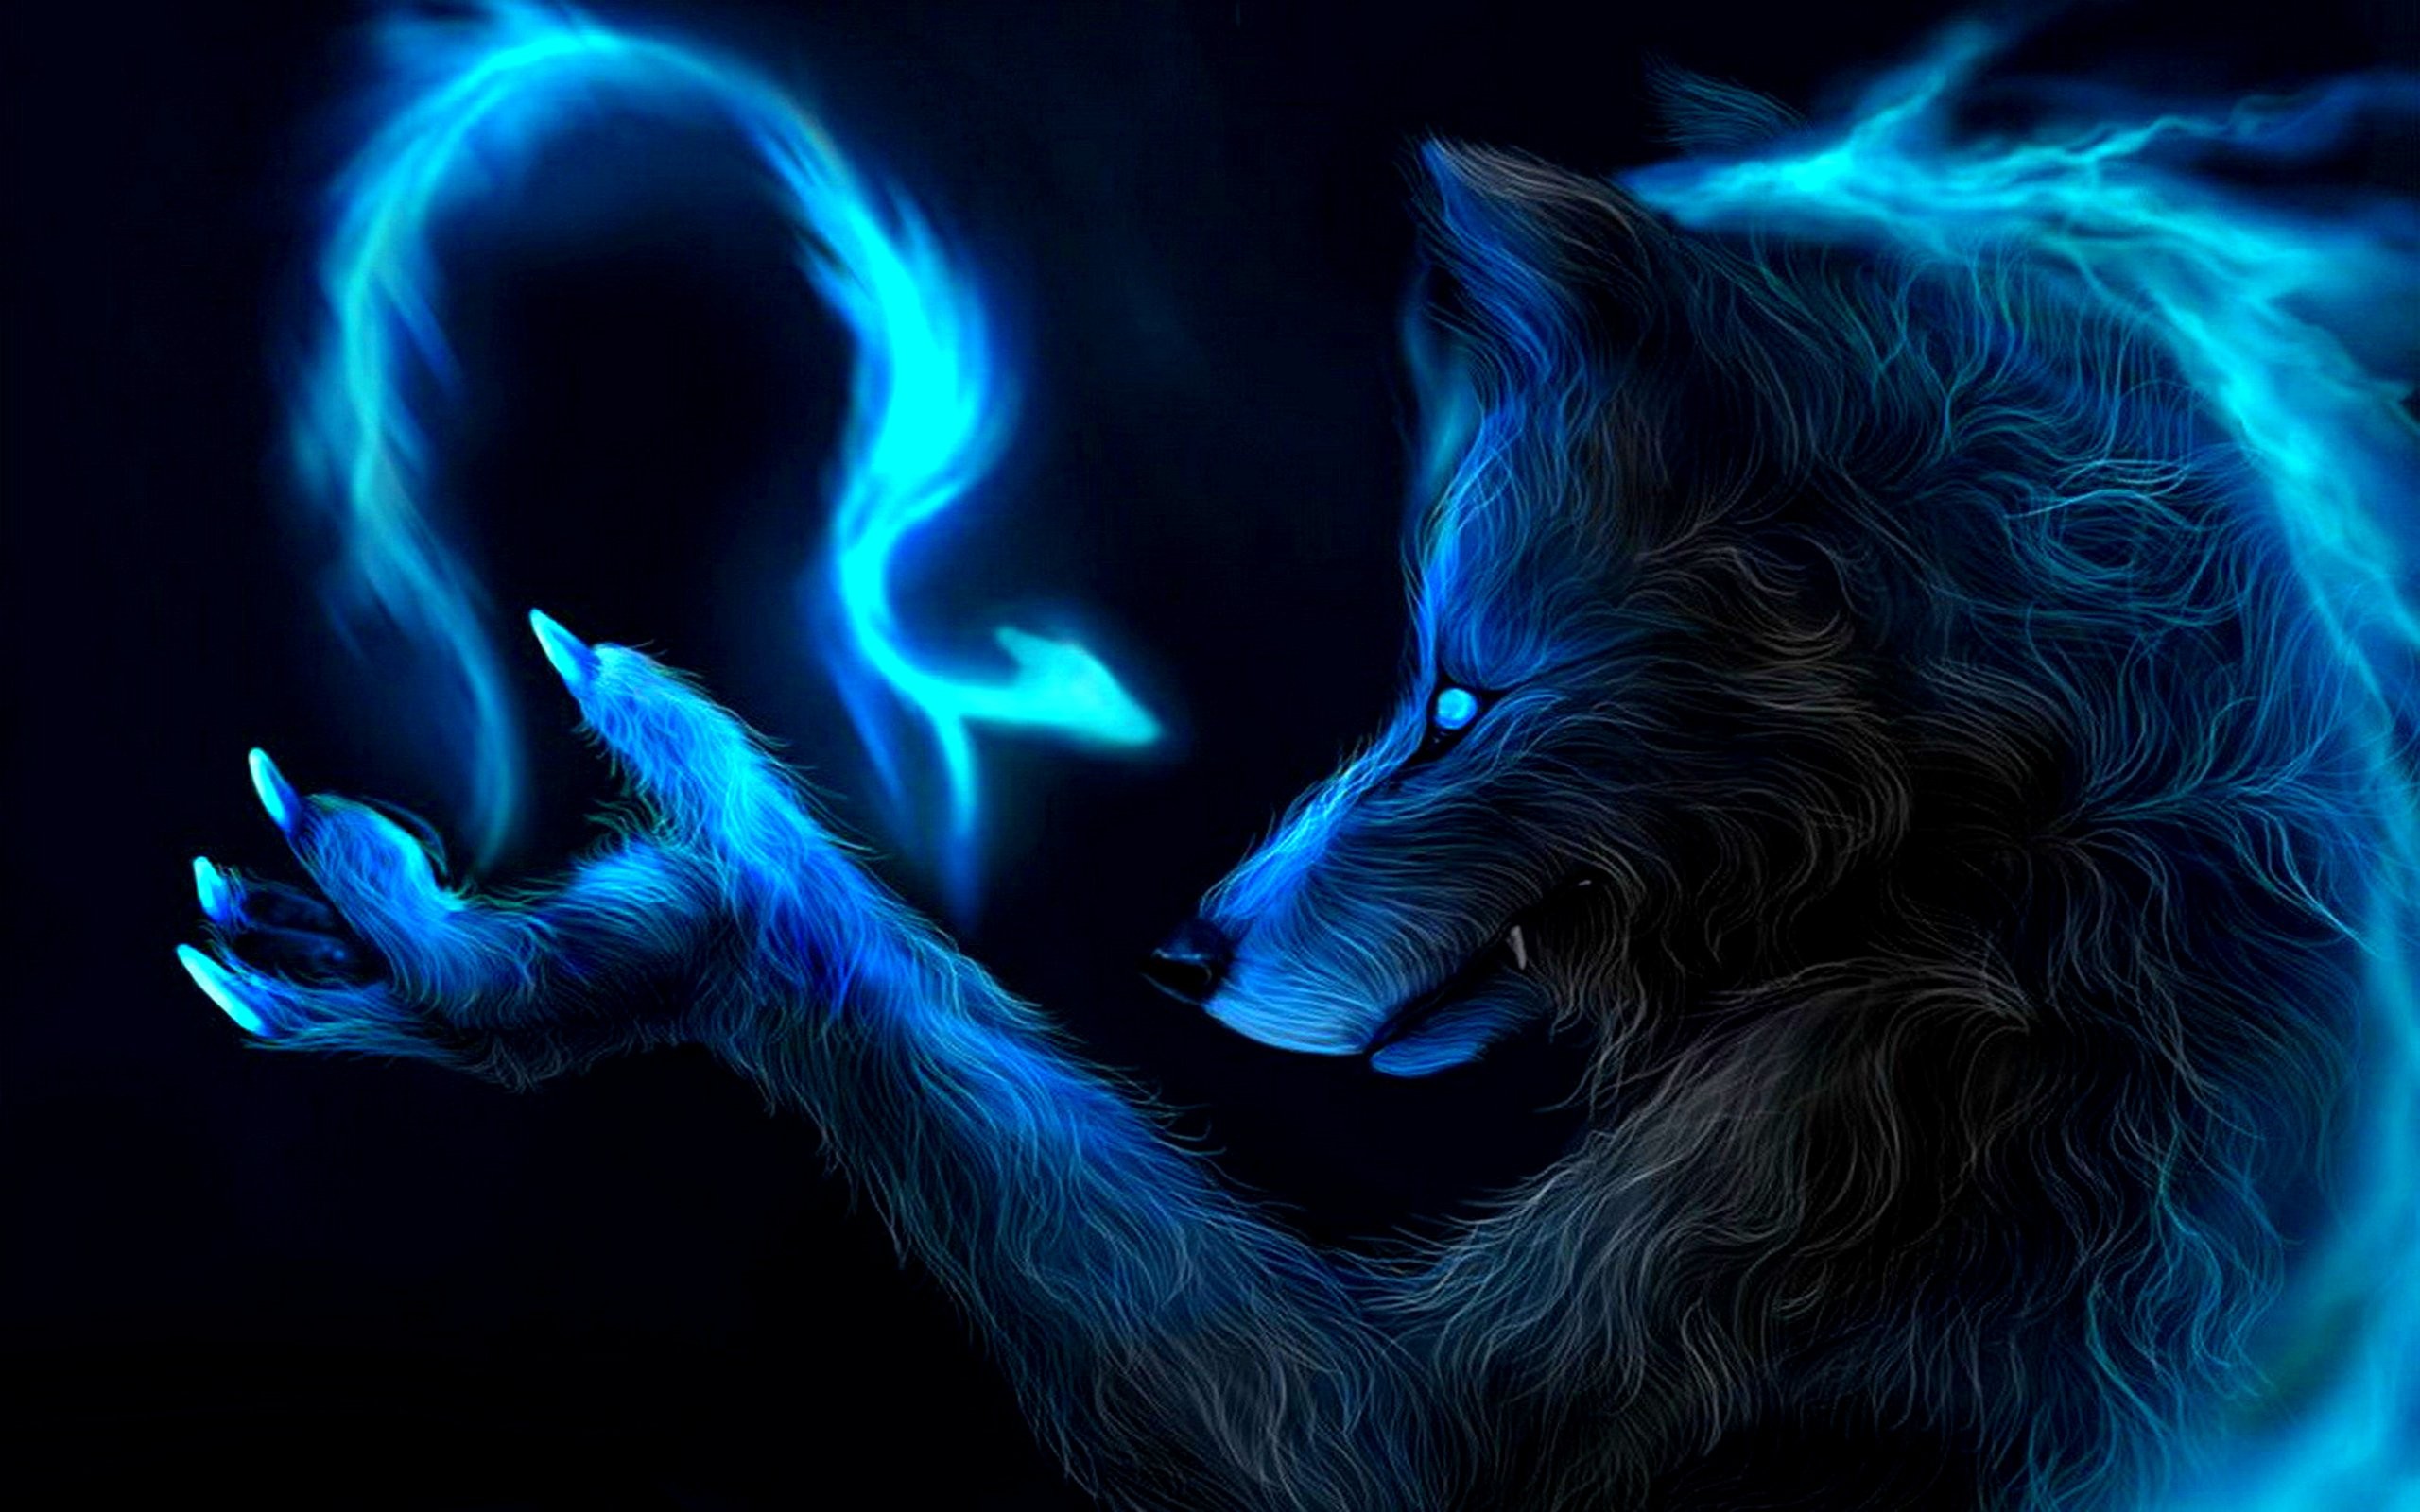 mejor fondo de pantalla,azul eléctrico,oscuridad,lobo,arte fractal,personaje de ficción